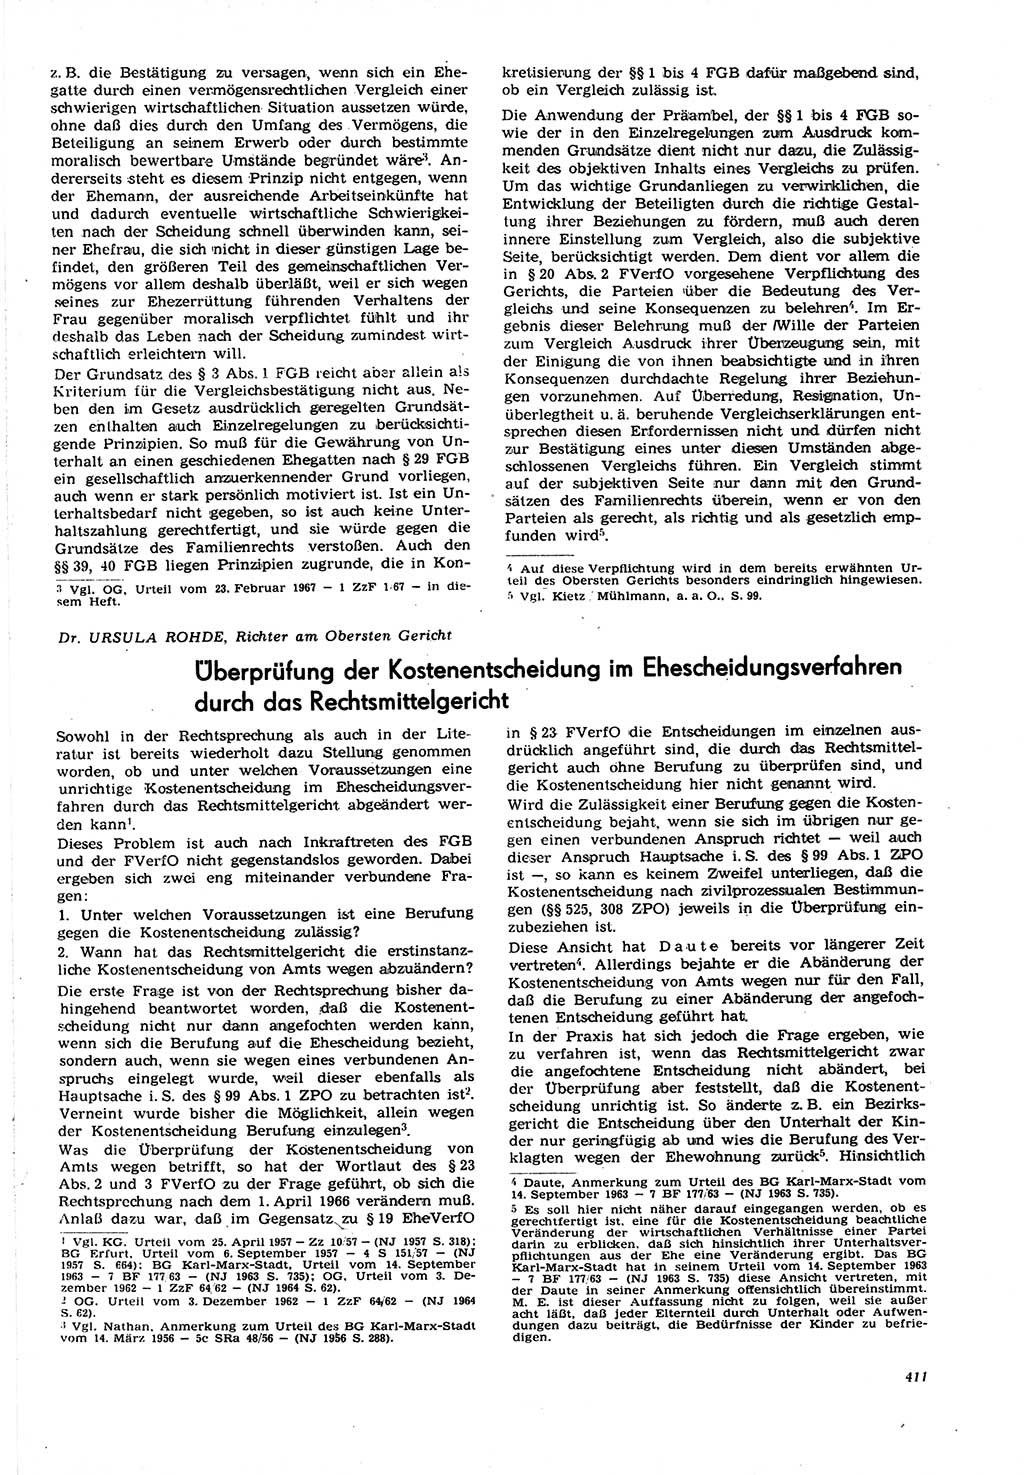 Neue Justiz (NJ), Zeitschrift für Recht und Rechtswissenschaft [Deutsche Demokratische Republik (DDR)], 21. Jahrgang 1967, Seite 411 (NJ DDR 1967, S. 411)